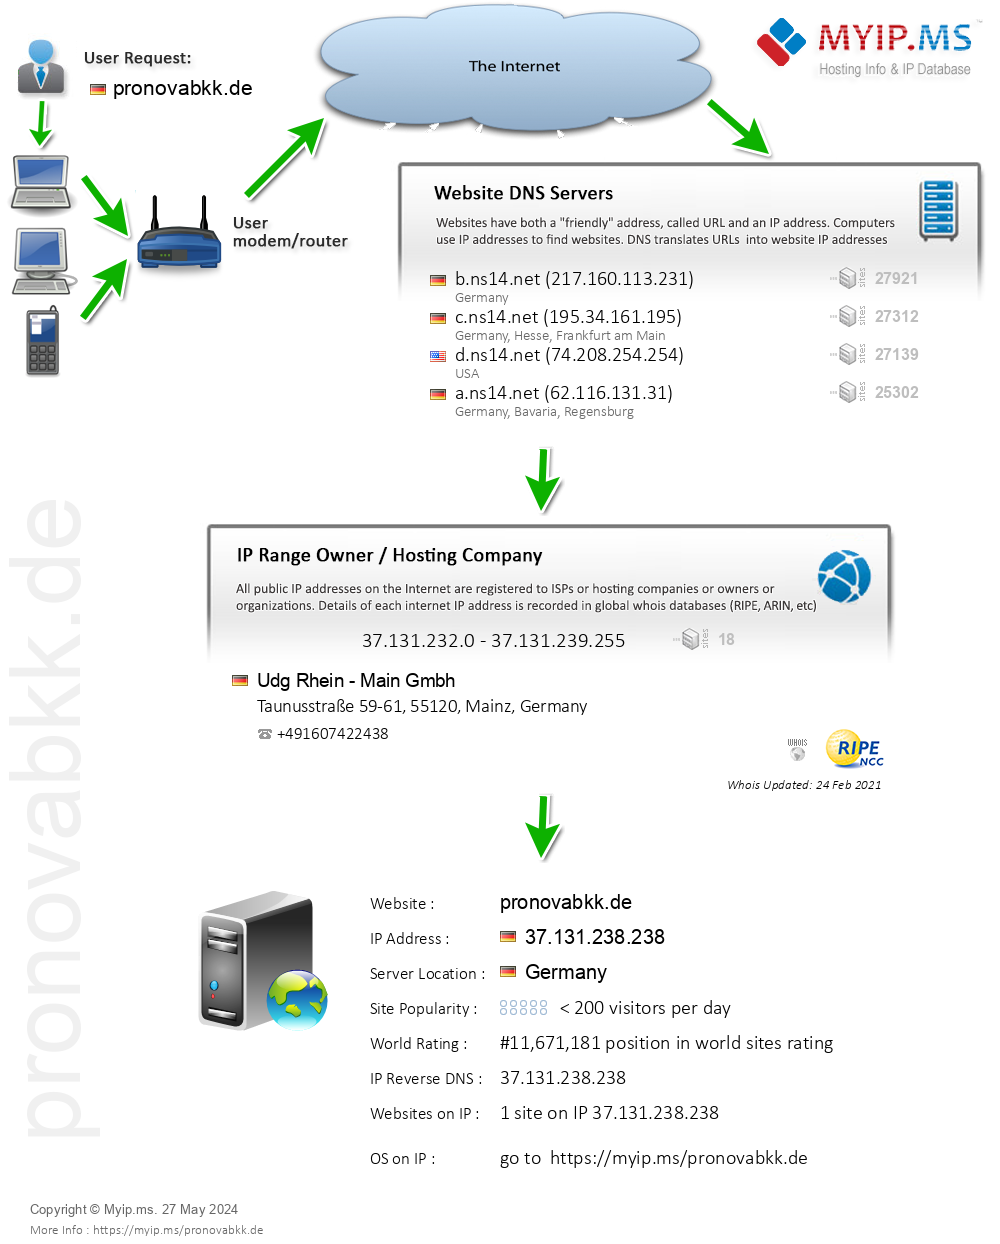 Pronovabkk.de - Website Hosting Visual IP Diagram